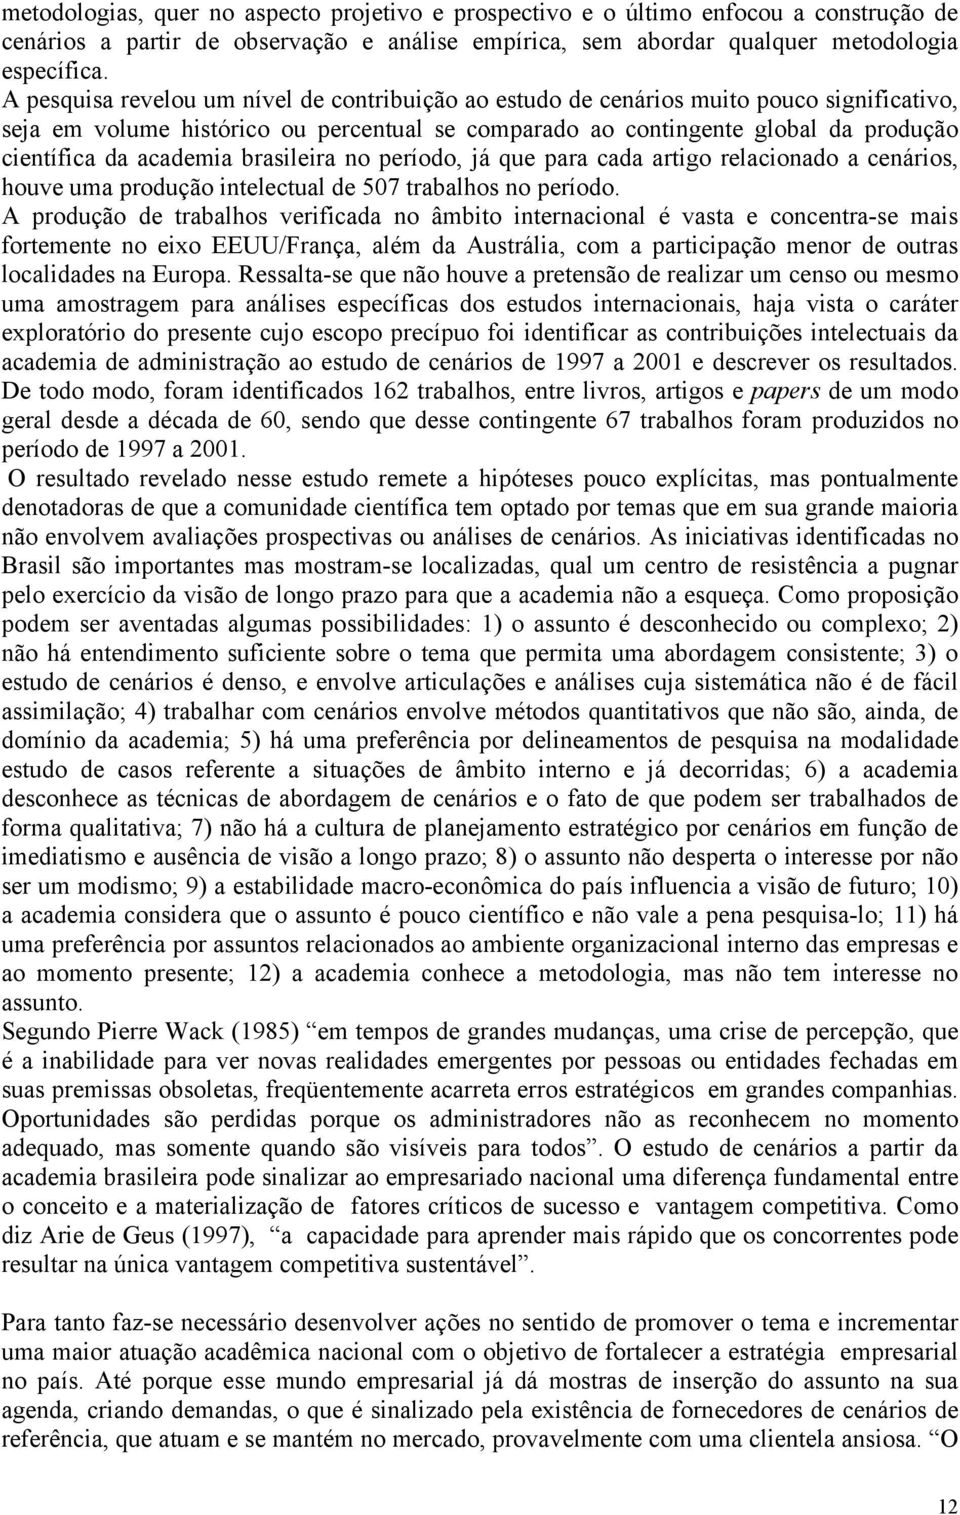 academia brasileira no período, já que para cada artigo relacionado a cenários, houve uma produção intelectual de 507 trabalhos no período.